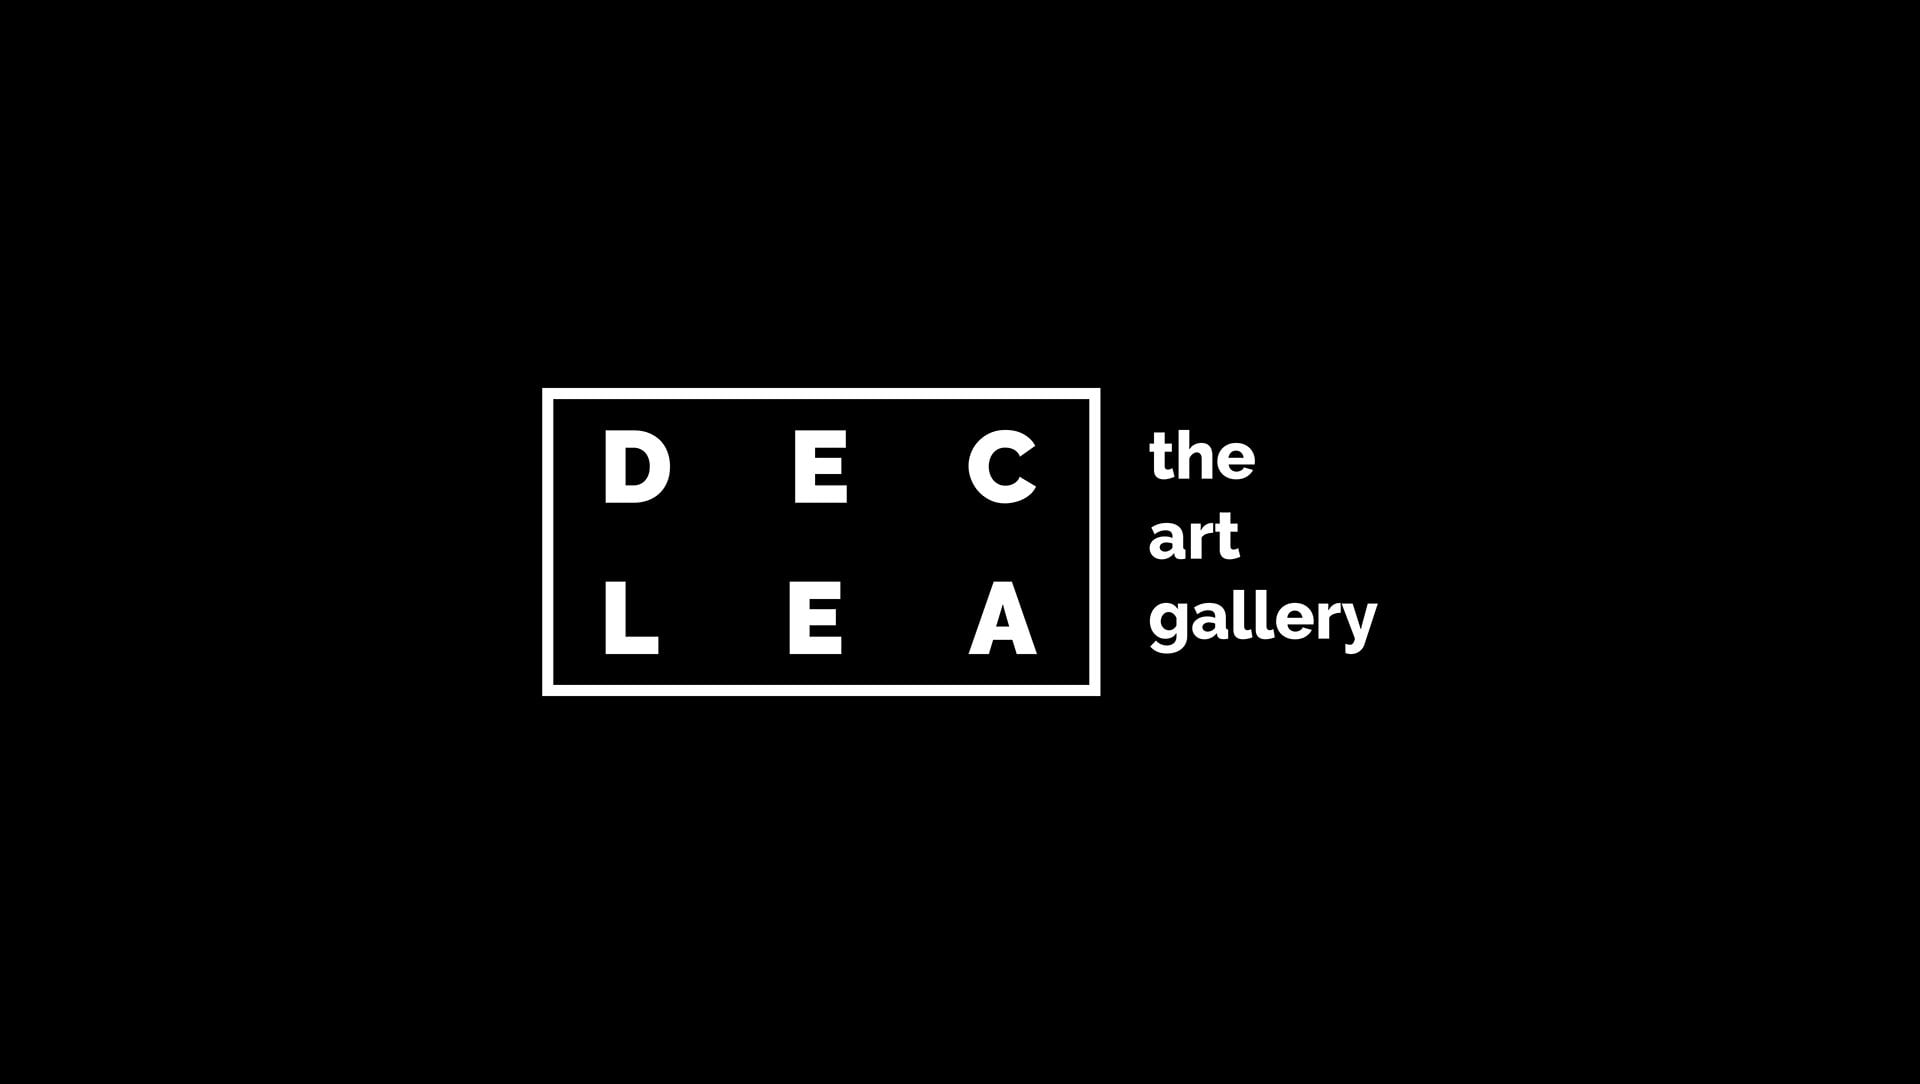 简洁风格的Declea画廊视觉设计欣赏